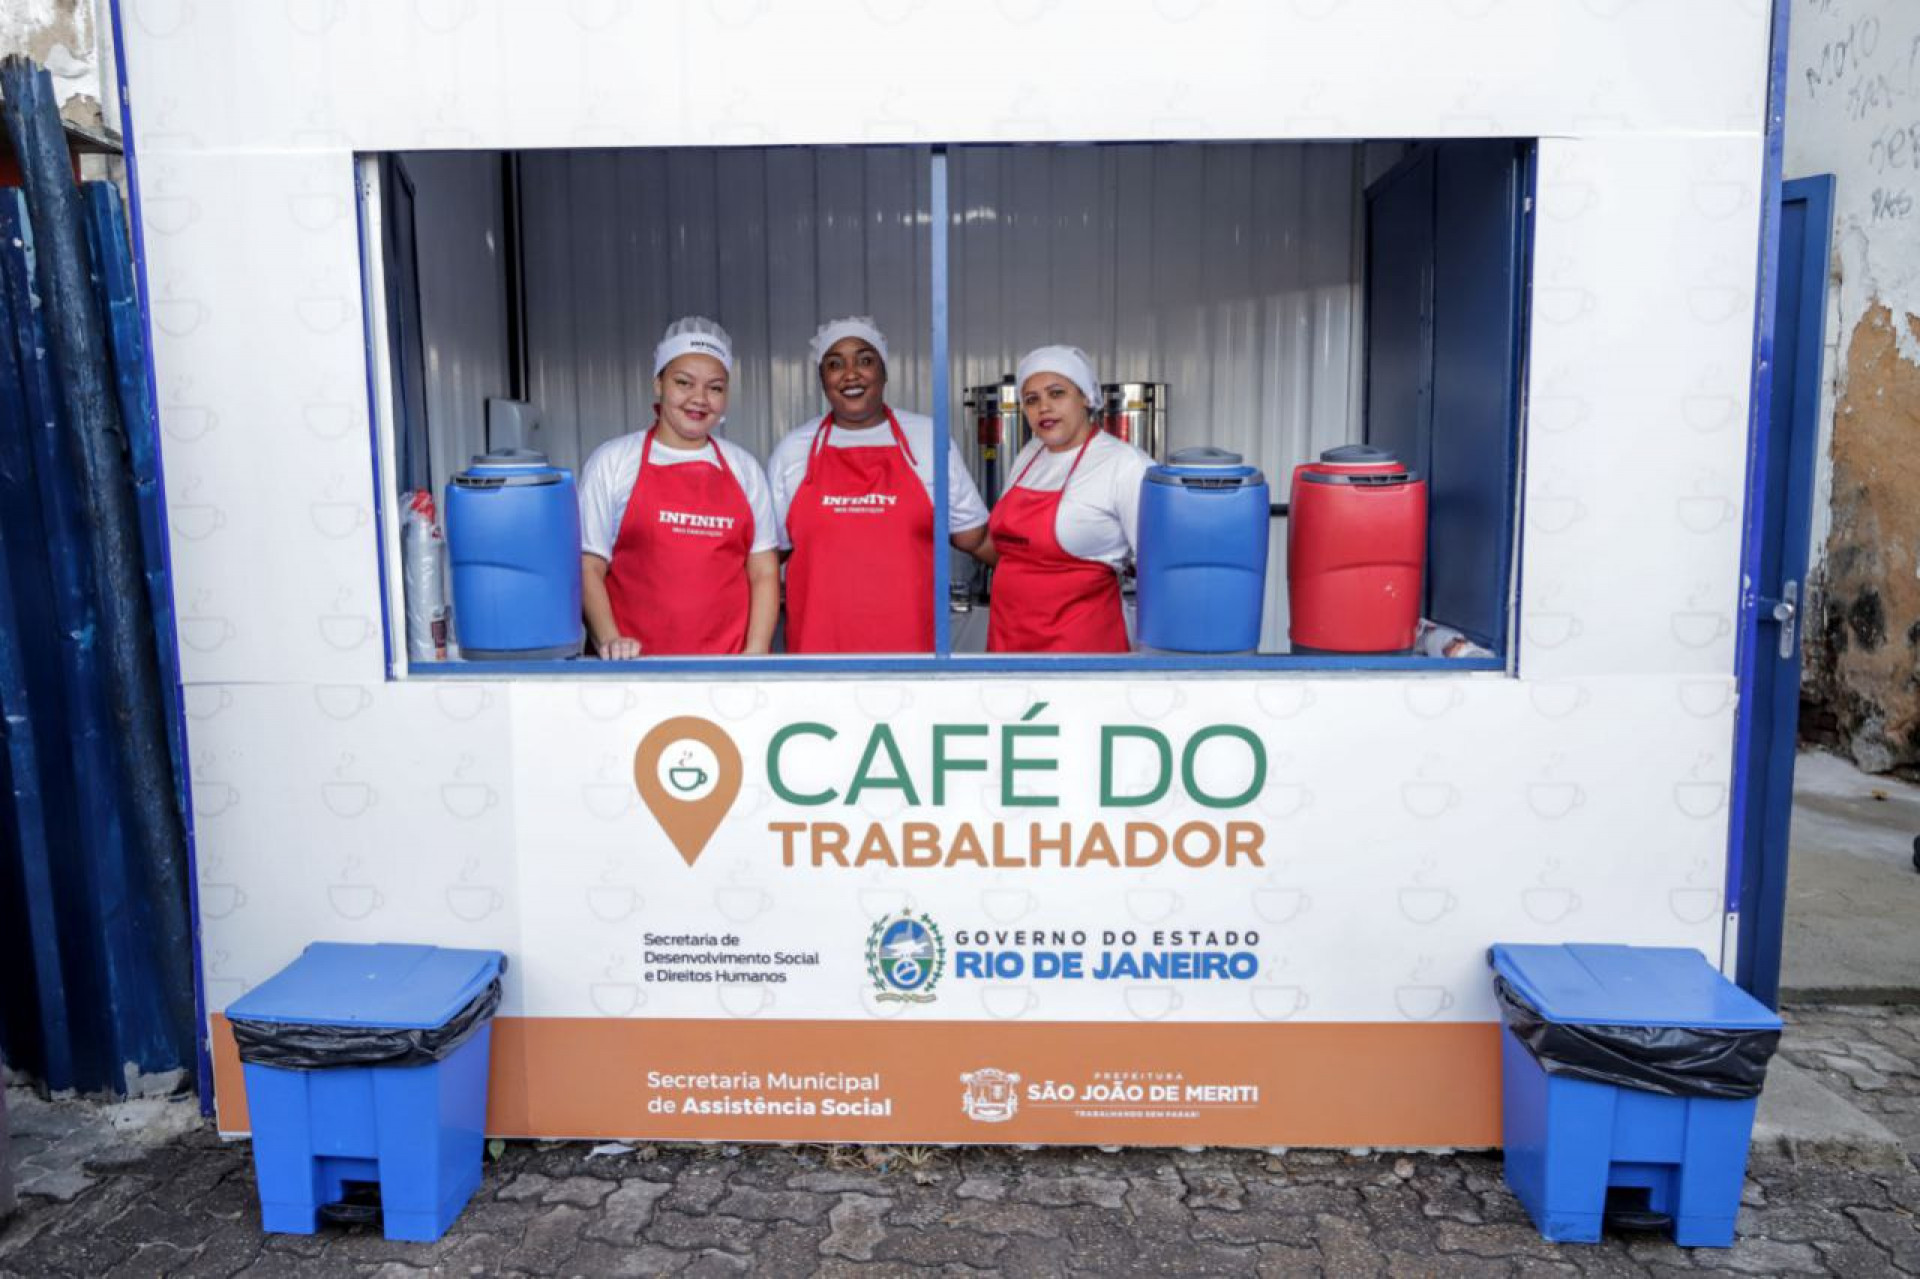 CAFÉ DO TRABALHADOR  Secretaria de Desenvolvimento Social e